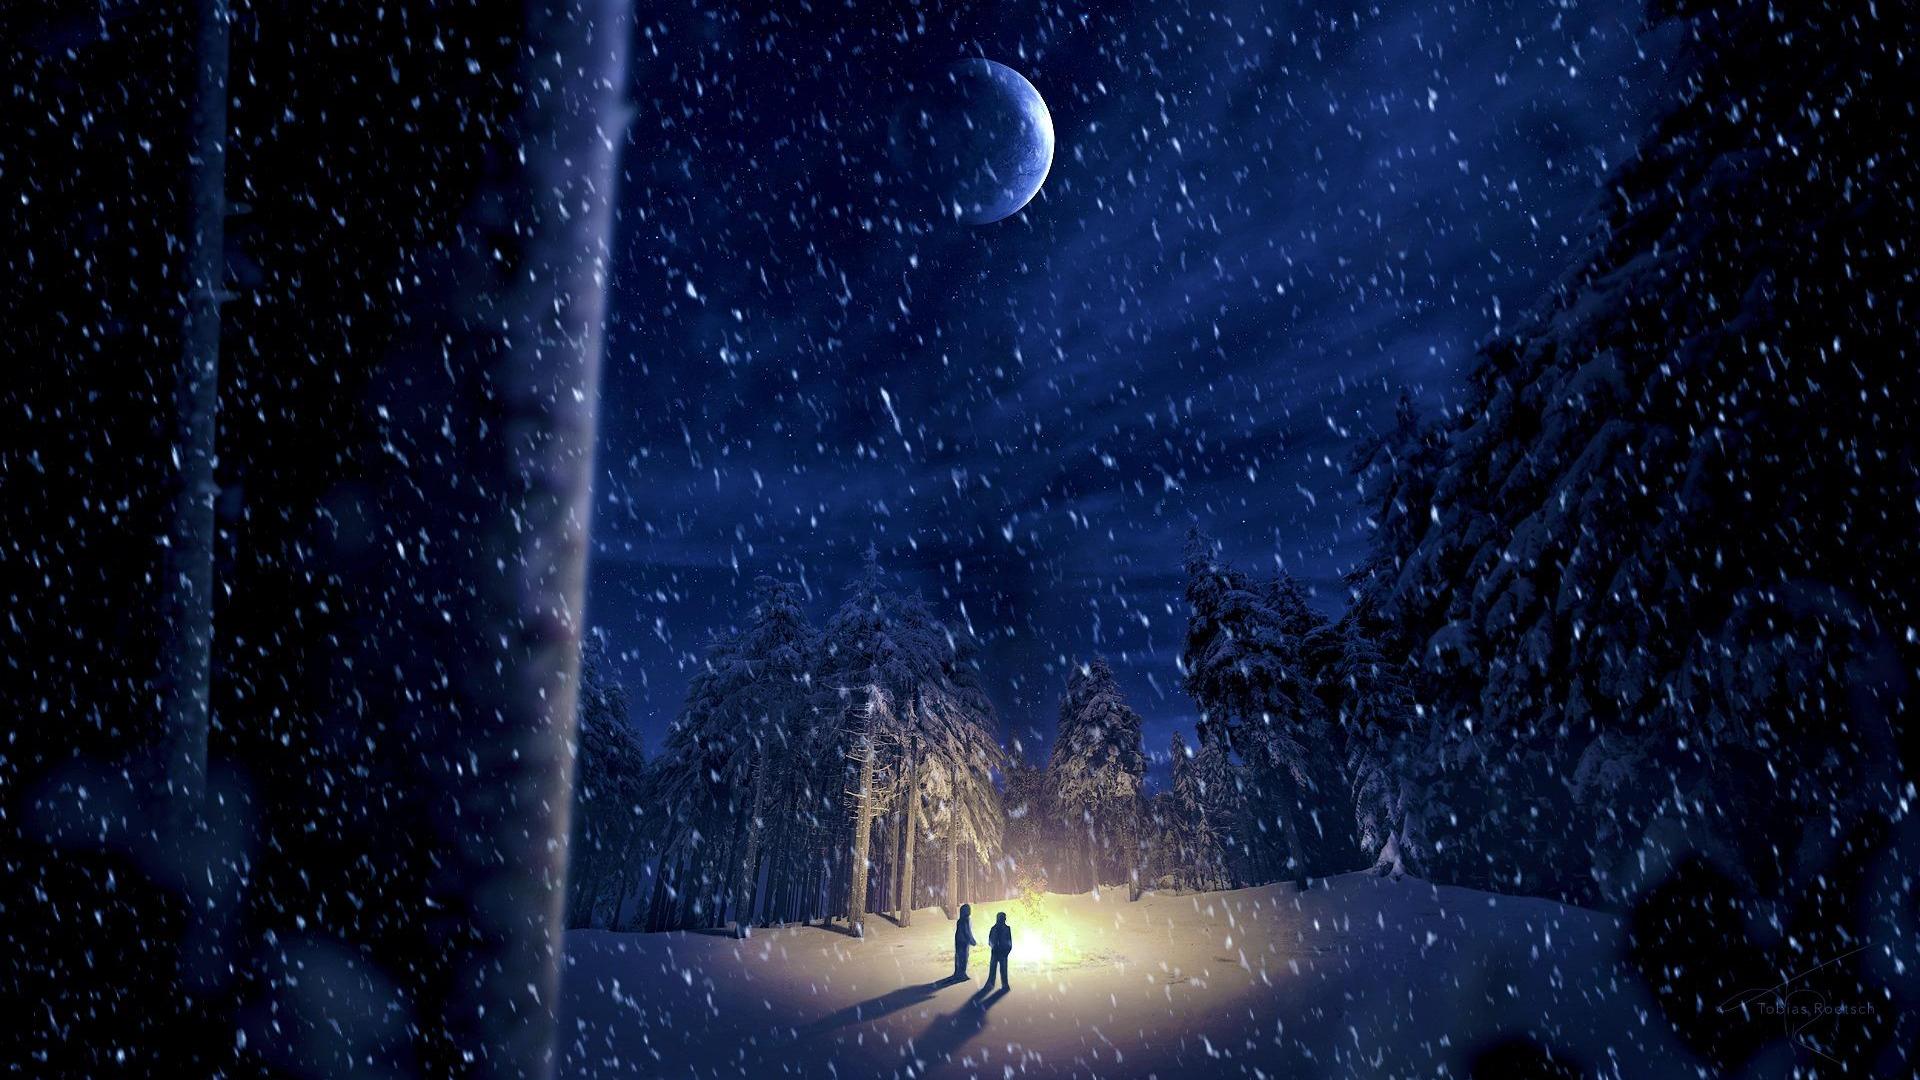 Trải nghiệm không gian đêm đông tuyệt đẹp qua hình nền đầy lãng mạn và ấm áp. Cơn gió lạnh thoảng qua những cành cây khô, và ánh đèn lung linh phủ lên mọi nẻo đường, tạo nên cảm giác thật hữu tình. 